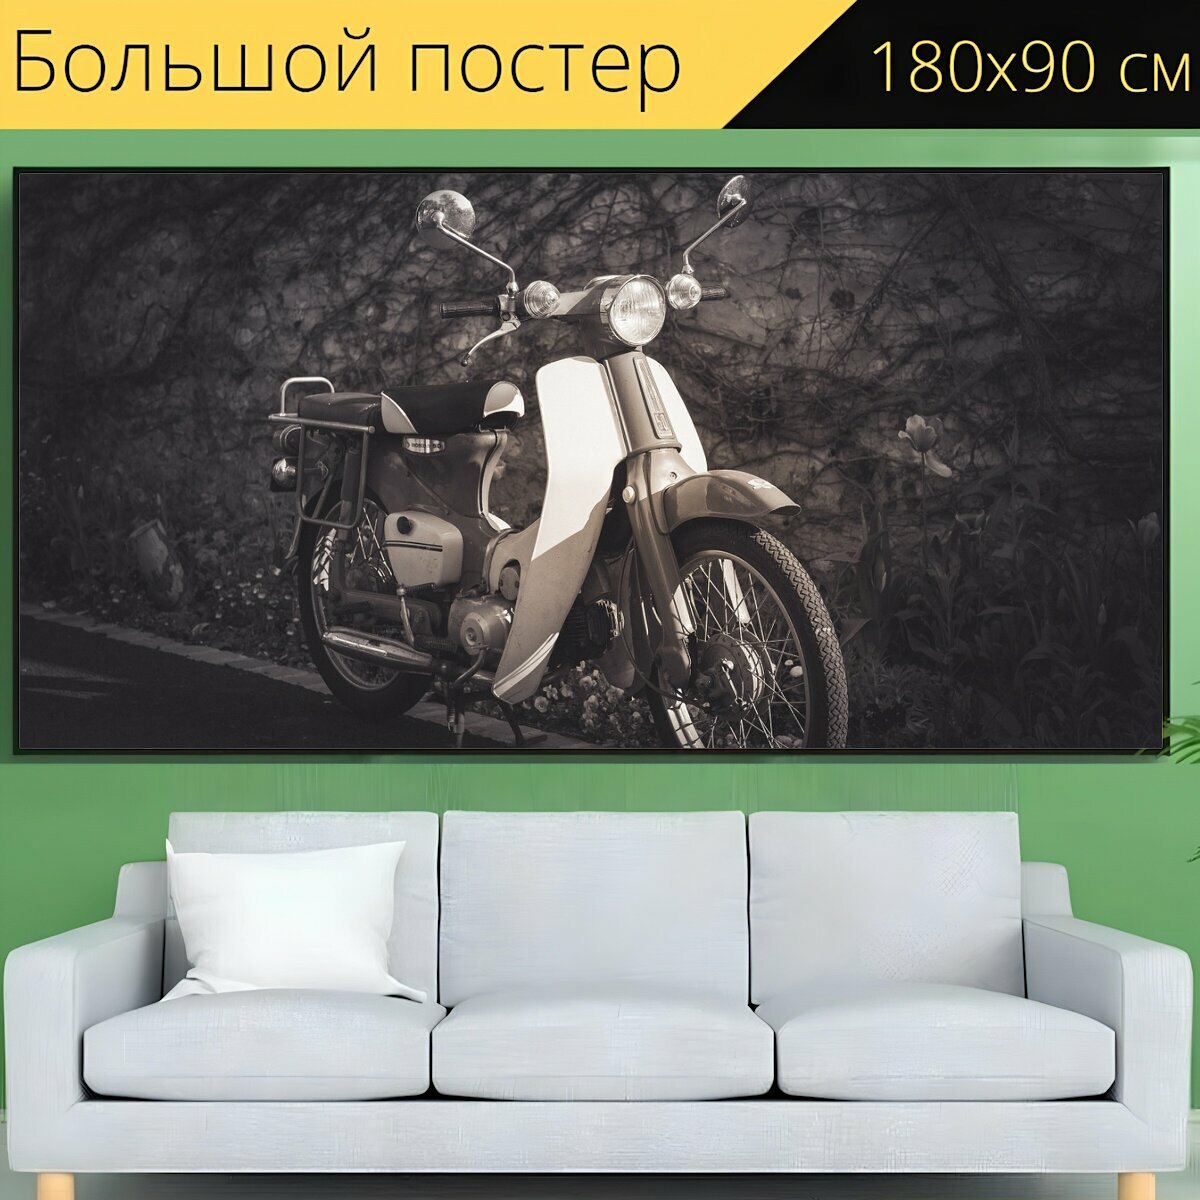 Большой постер "Мотоцикл, мото, винтаж" 180 x 90 см. для интерьера